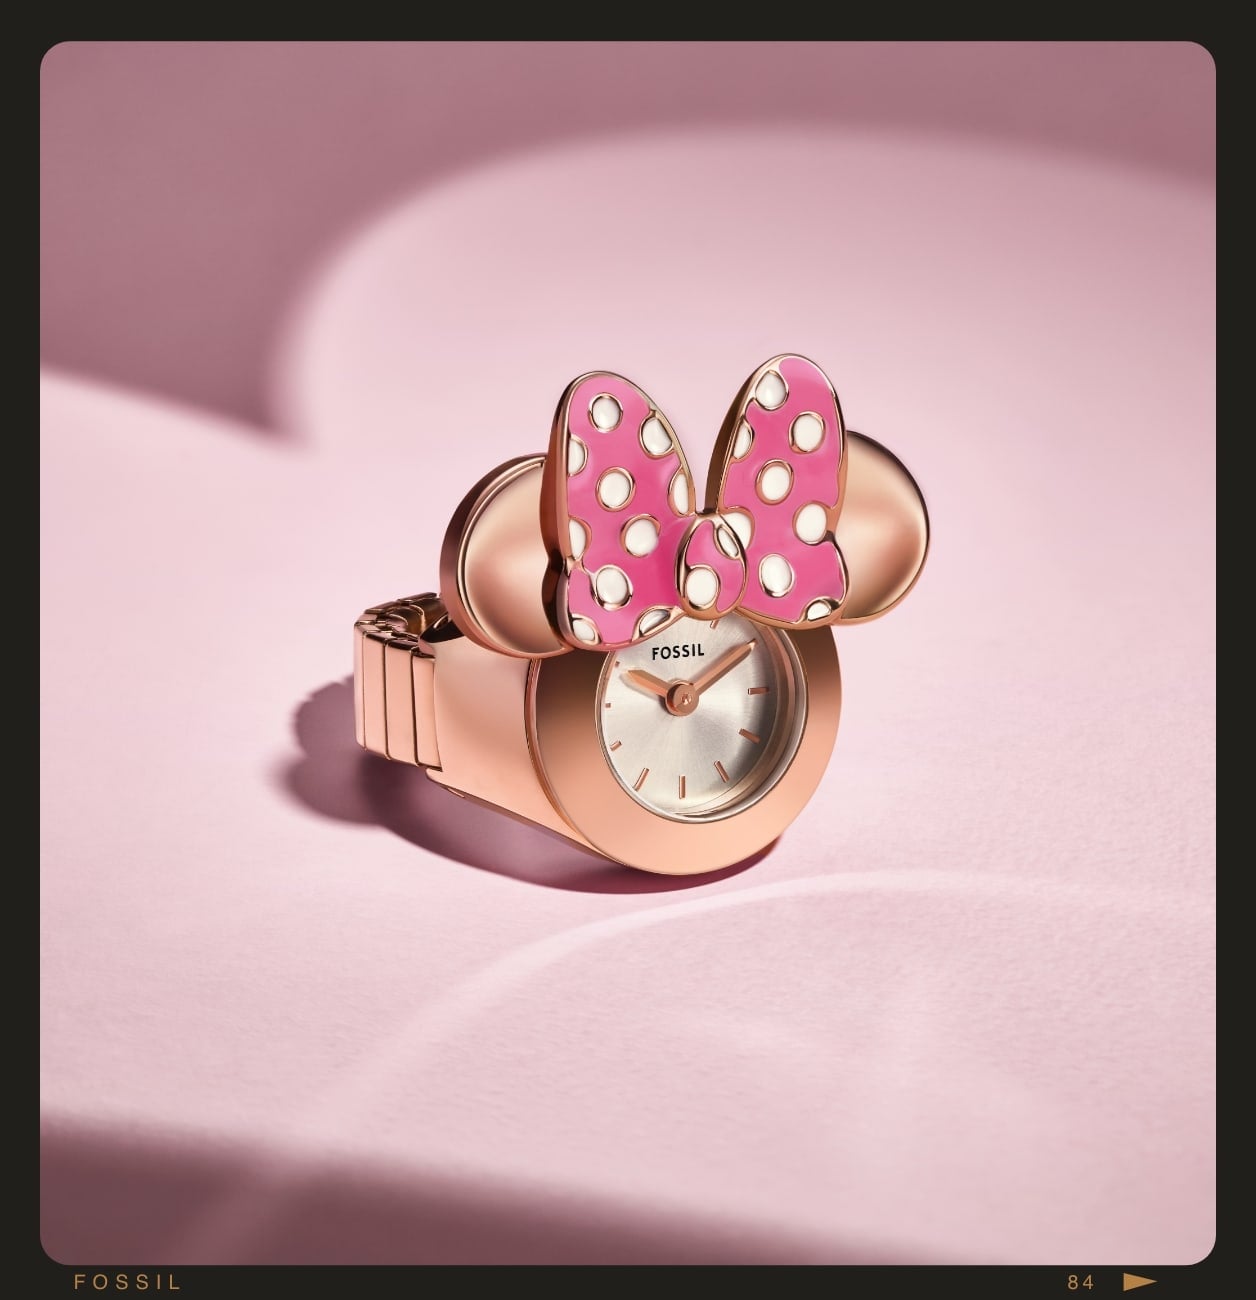 ローズゴールドトーンのディズニー ミニーマウス ウォッチ リングは、ミニーマウスの耳と水玉模様のリボンが特徴です。